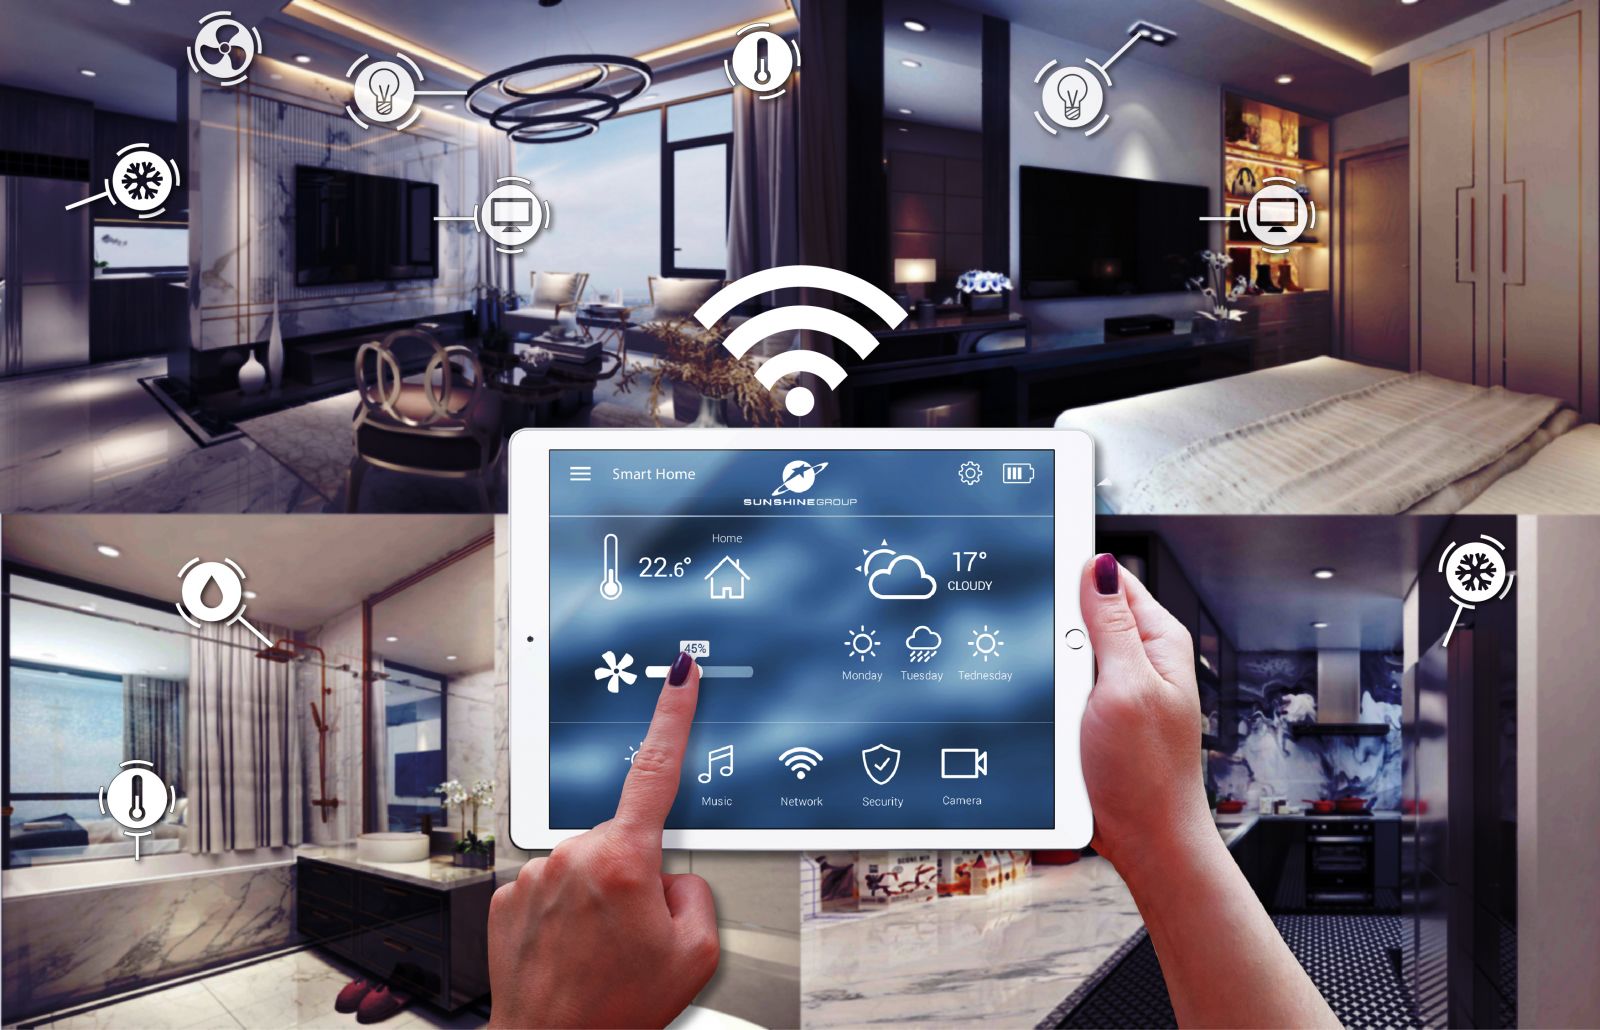 Ứng dụng Sunshine Home cho phép điều khiển toàn bộ các thiết bị điện thông minh trong căn hộ tại các dự án thuộc phân khúc cao cấp của Sunshine Group như: hệ thống chiếu sáng, điều hoà, bình nóng lạnh, rèm cửa tự động…